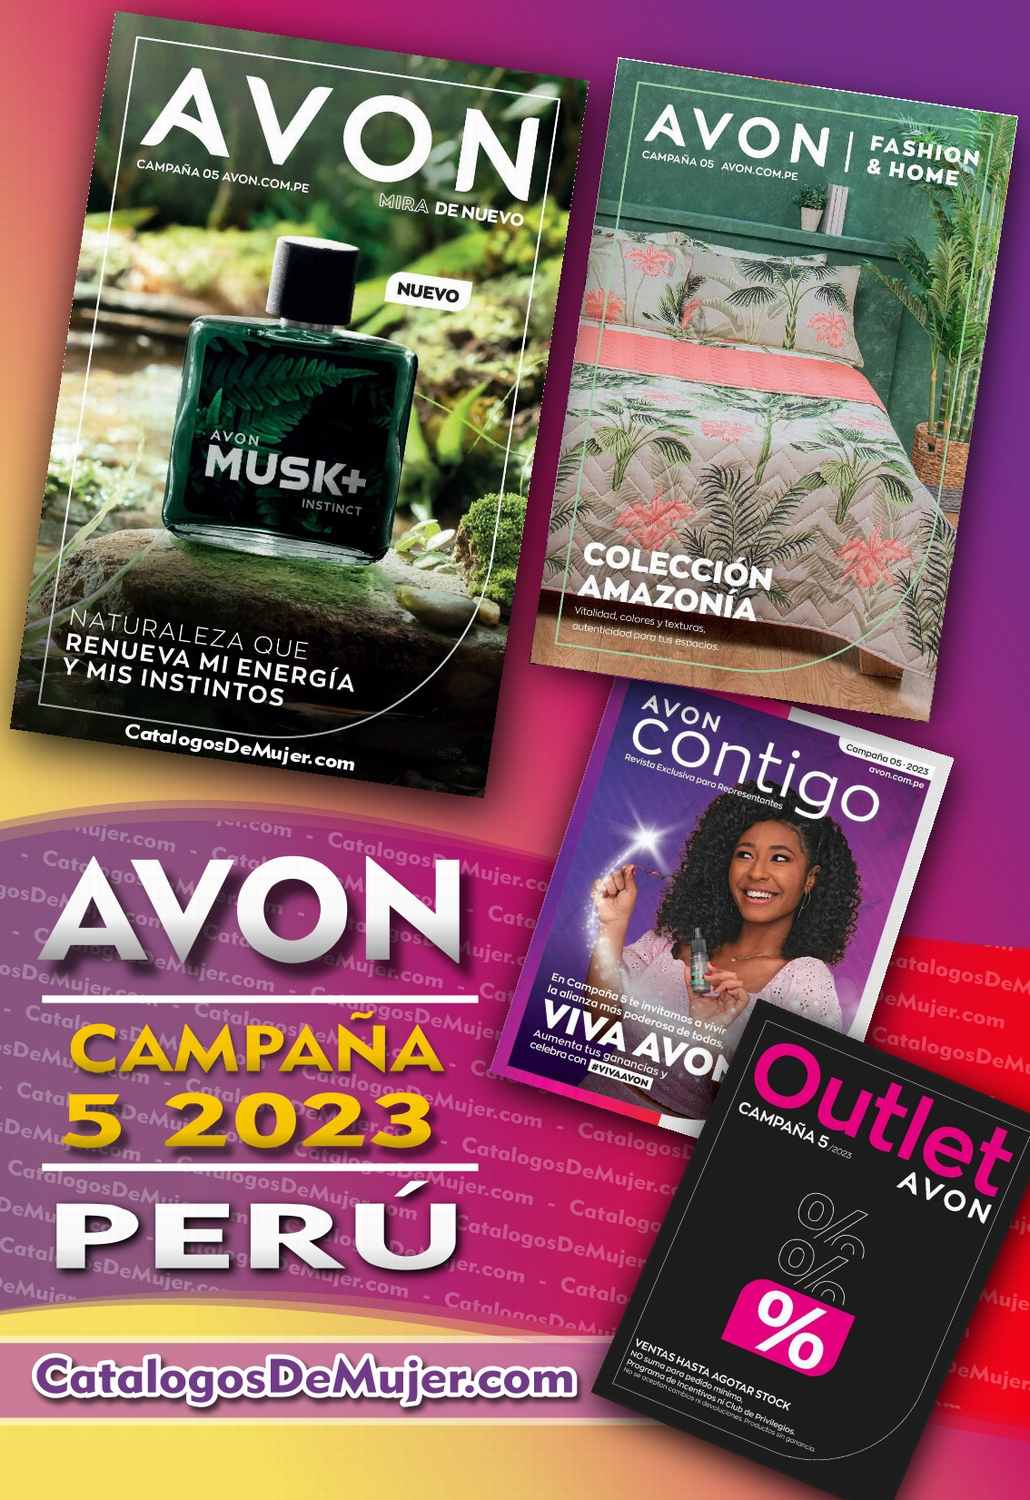 Catalogo Avon Contigo Campaña 5 2023 Peru Archivos ⋆ Catálogos De Mujer